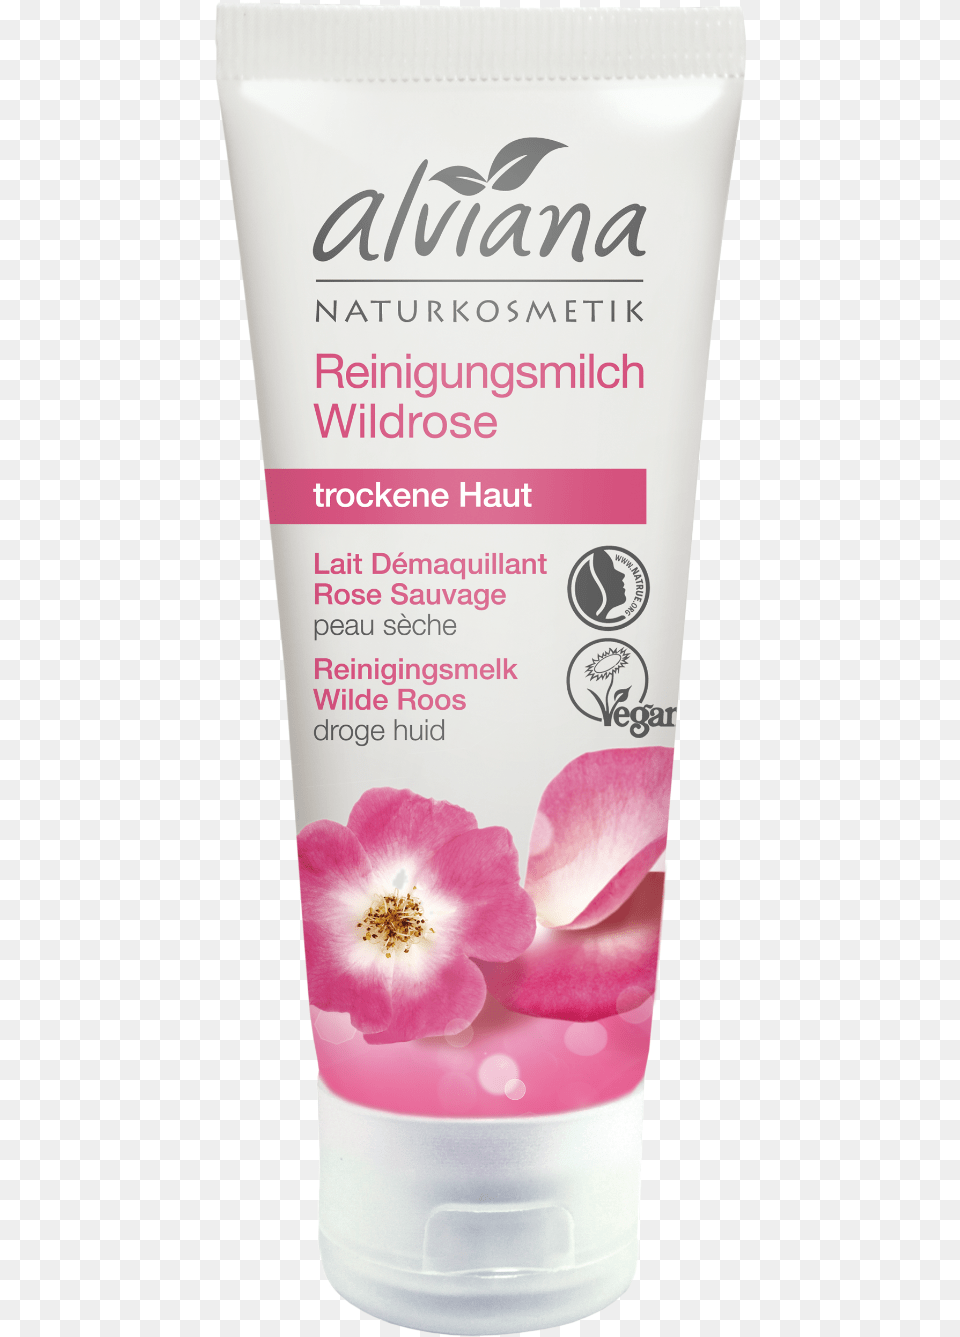 Alviana Naturkosmetik Wild Rose Cleansing Milk Body Wash, Bottle, Flower, Lotion, Petal Free Transparent Png